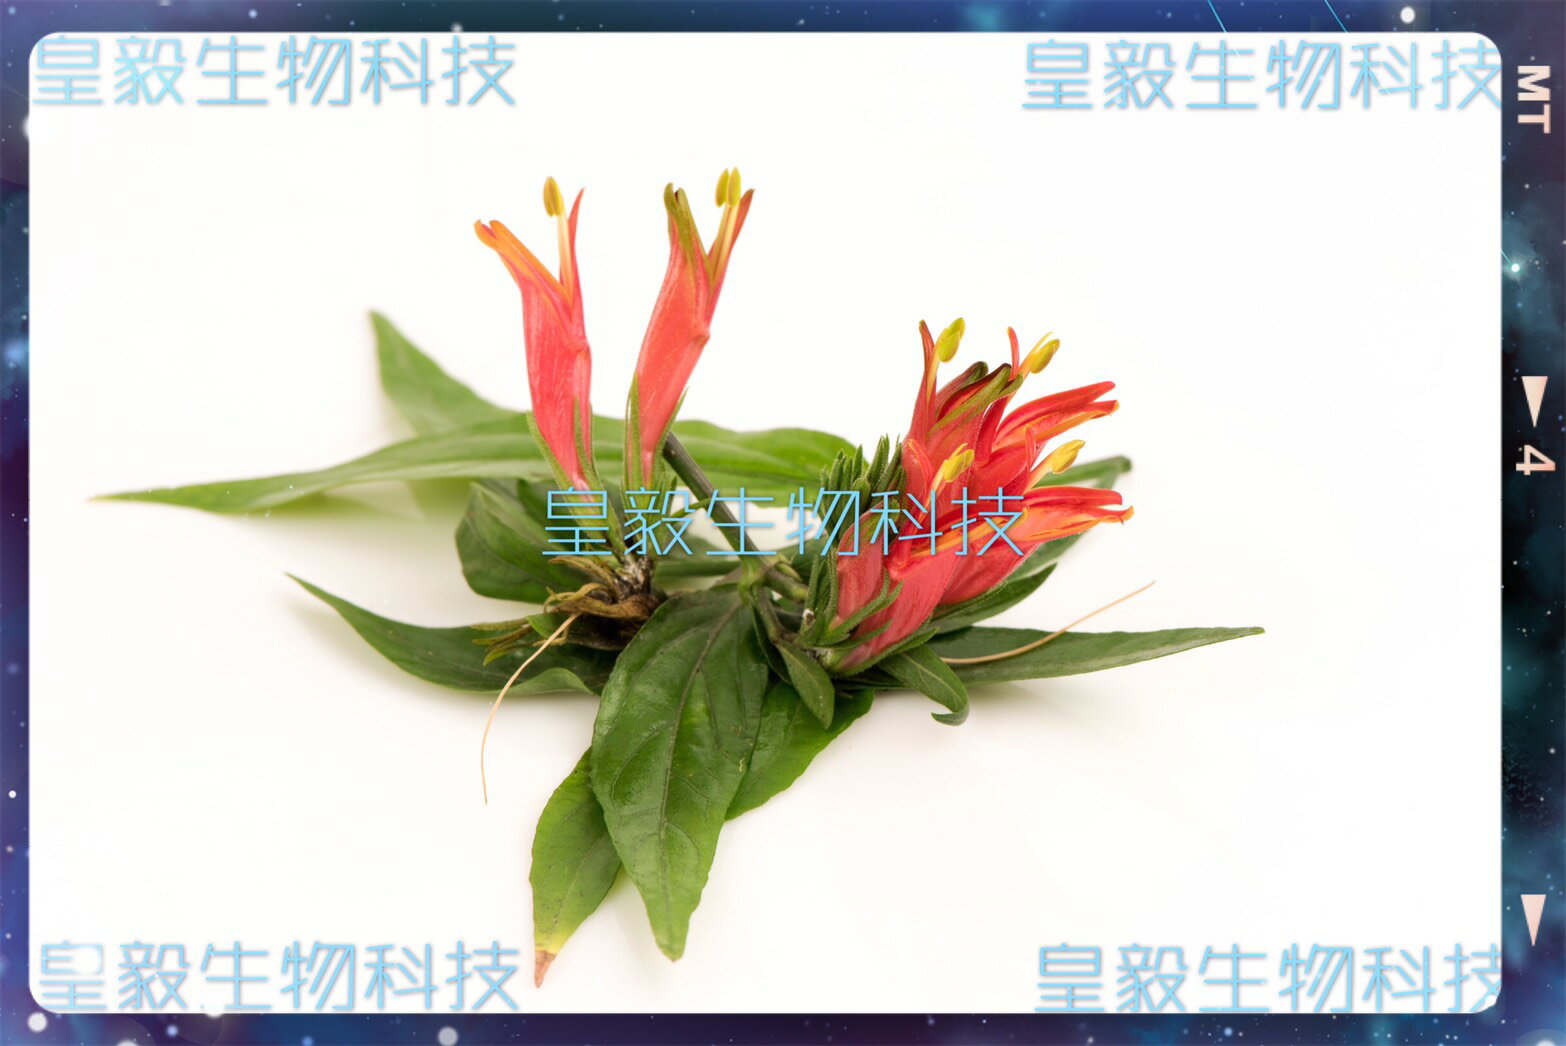 憂遁草葉子含梗(沙巴蛇草葉子含梗)台灣種植